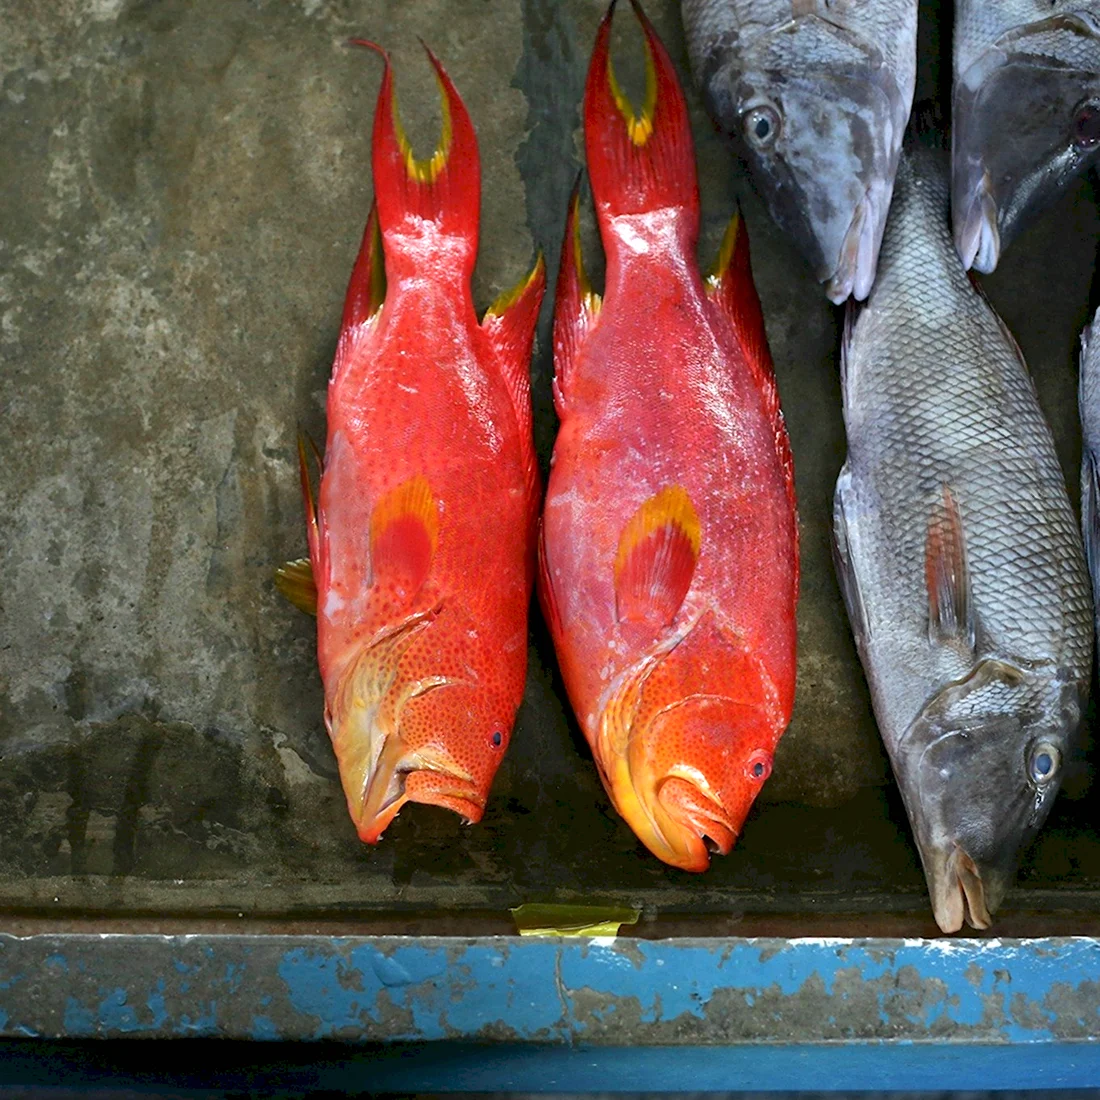 Рыбы Сейшельских островов